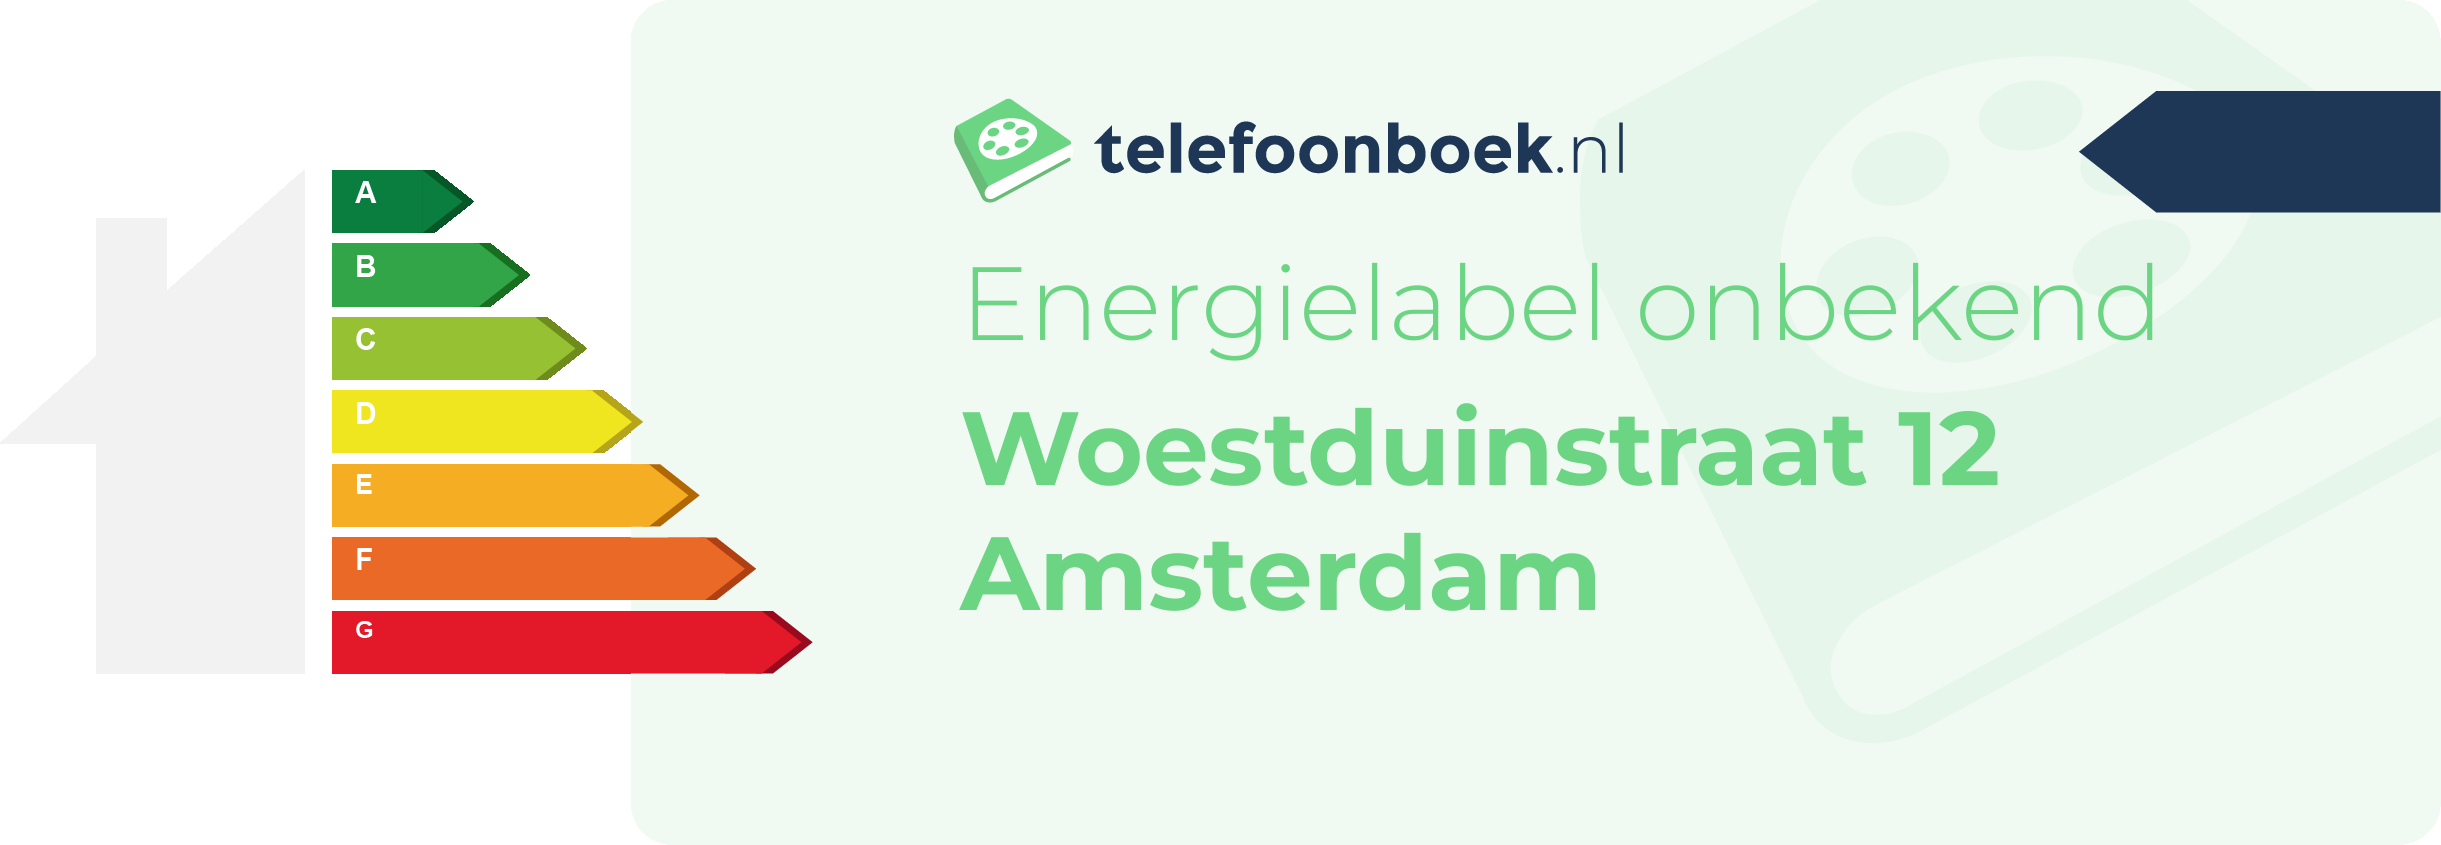 Energielabel Woestduinstraat 12 Amsterdam